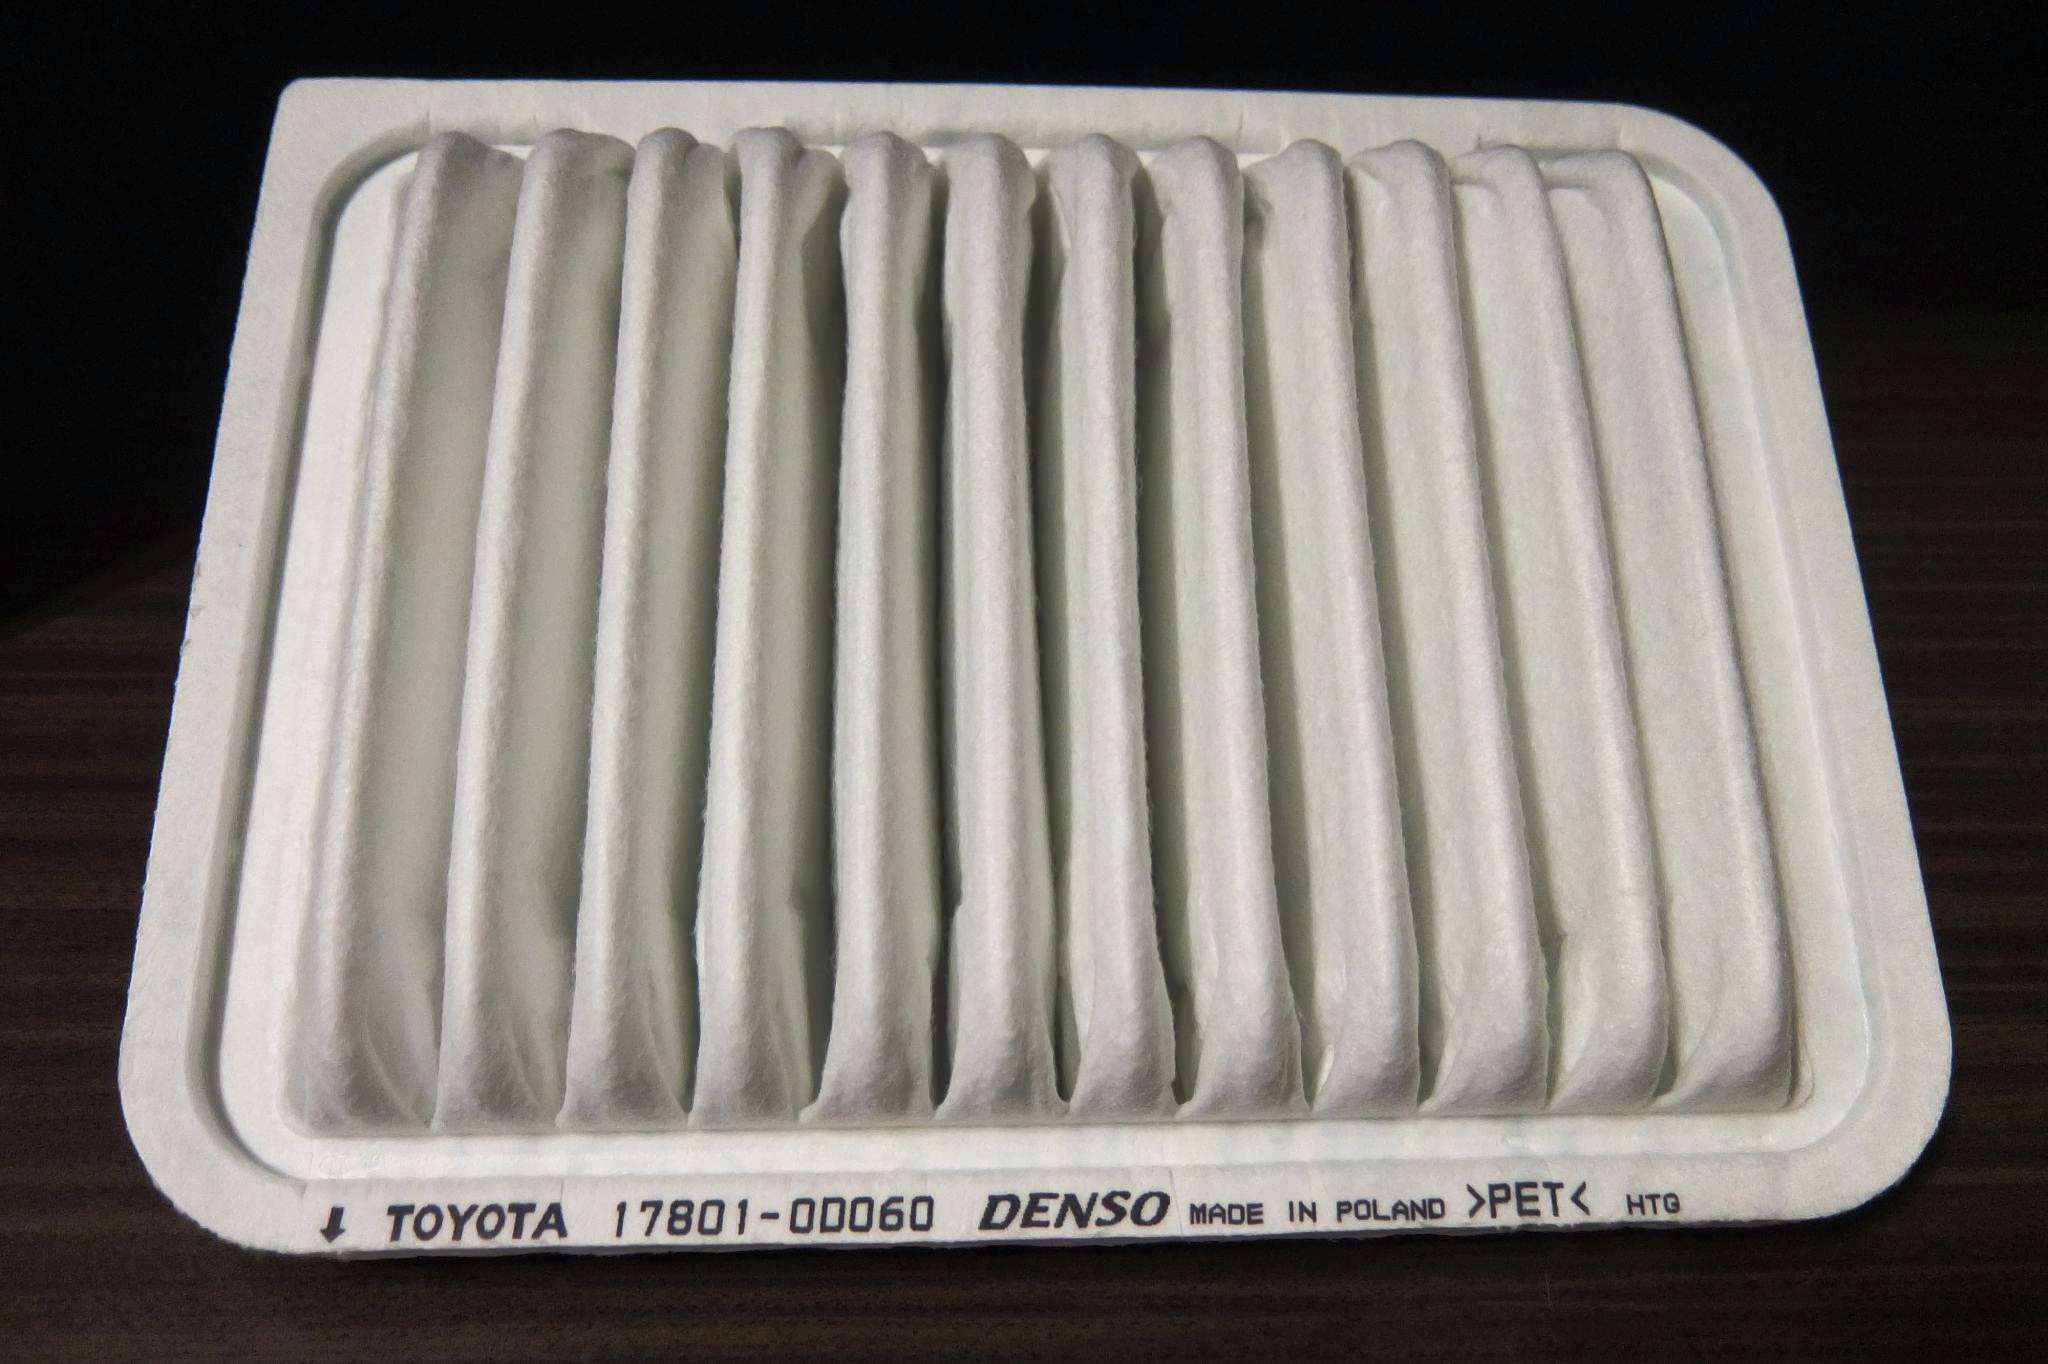 178010d060 Toyota фильтр воздушный. Toyota 17801-0d060. 17801-0t060. Фильтр двигателя воздушный тойота